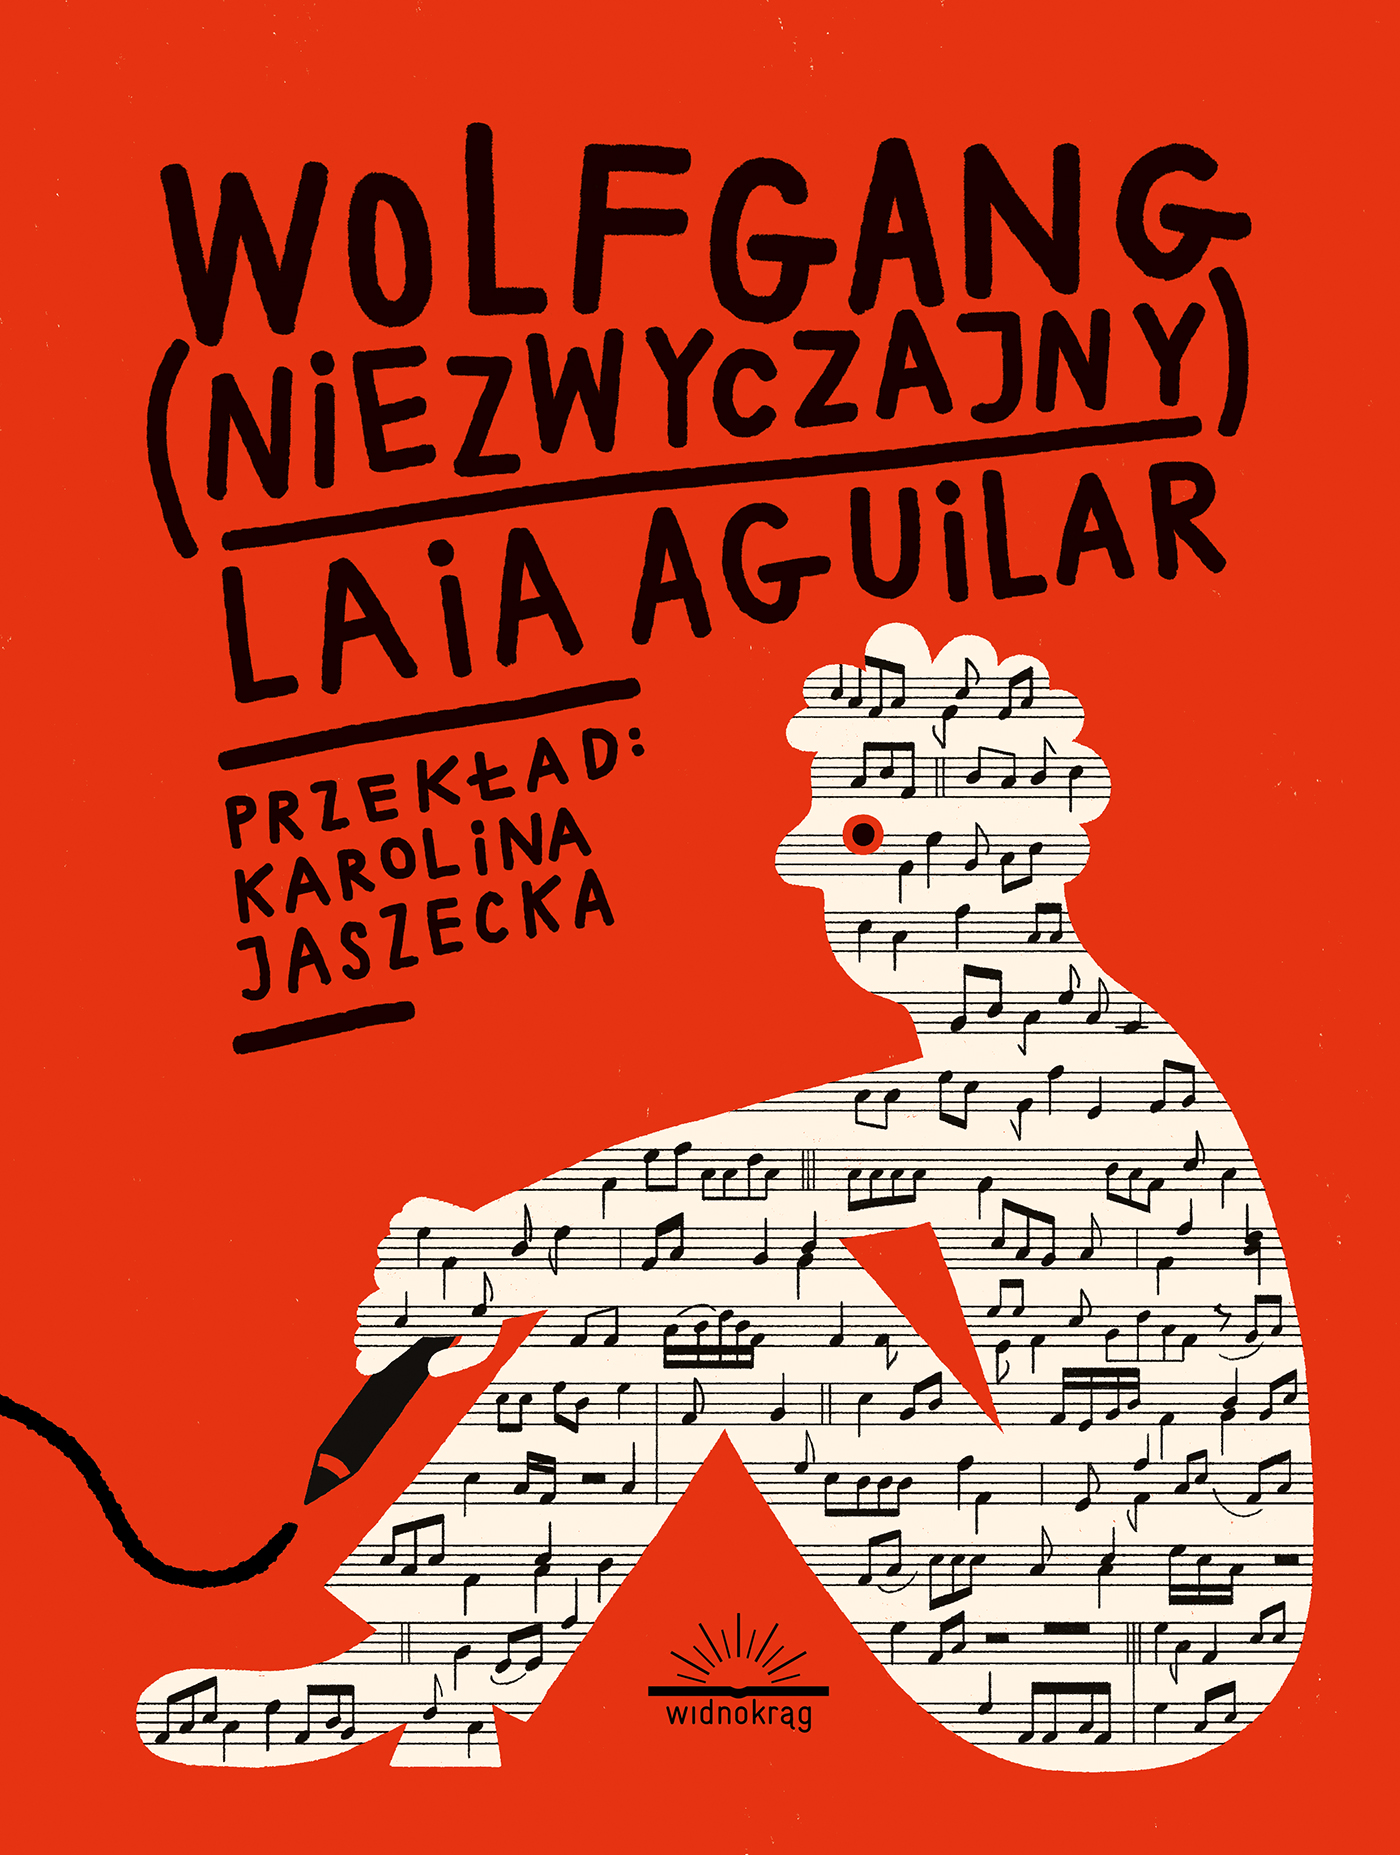 Wolfgang (niezwyczajny) / Tekst: Laia Aguilar / Wydawnictwo: Widnokrąg